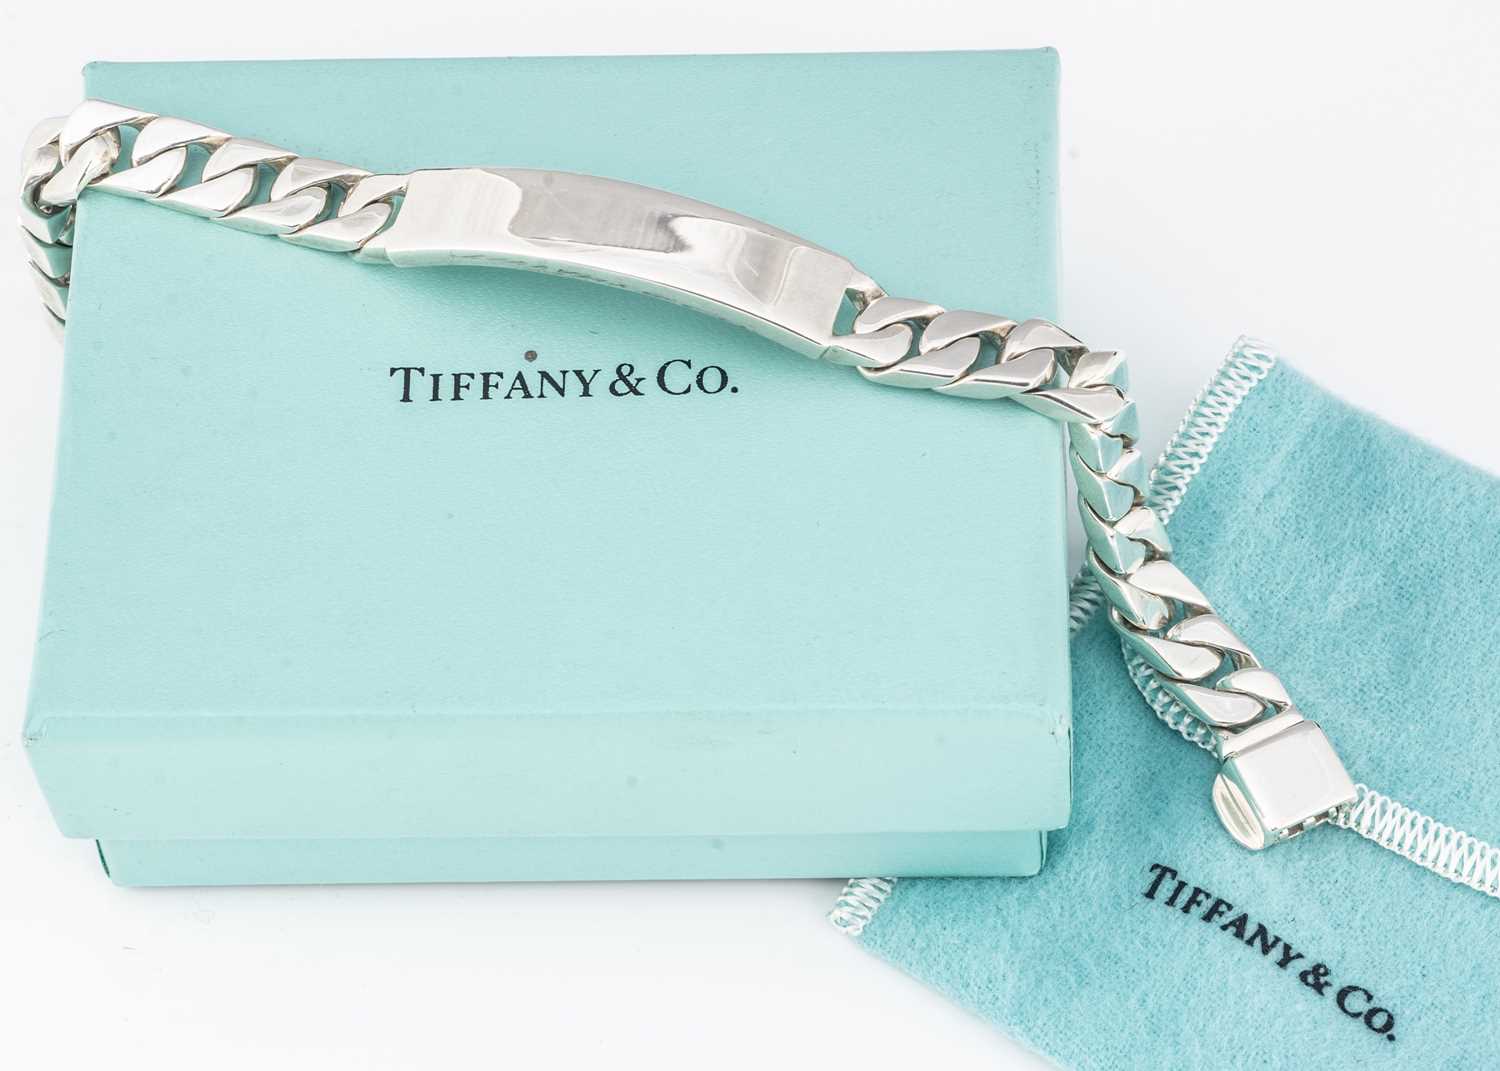 A Tiffany & Co silver identity bracelet,